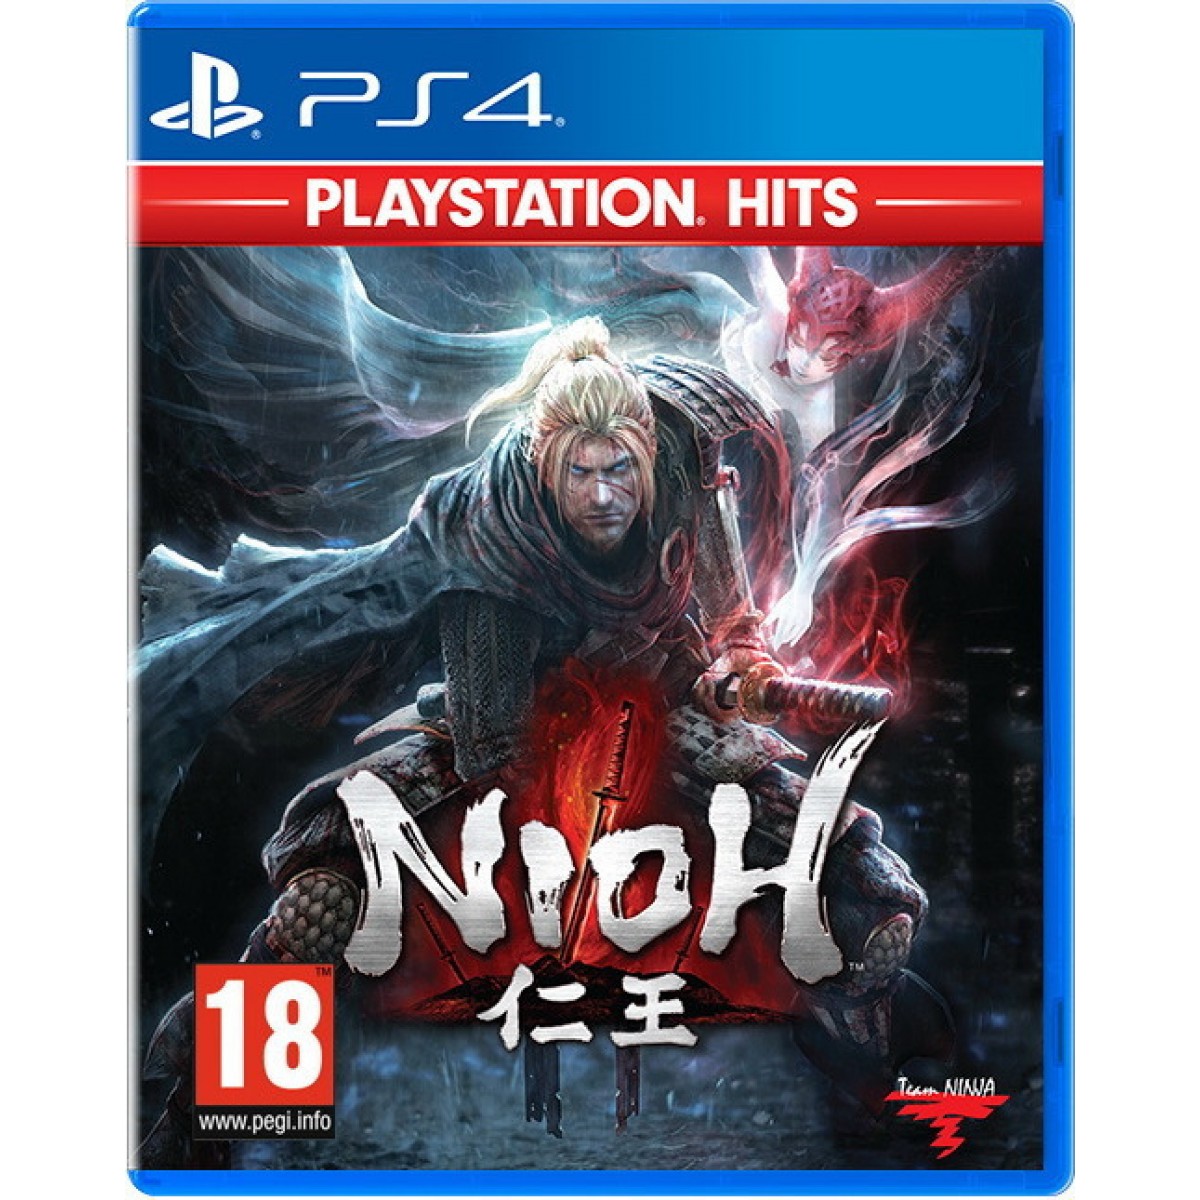 PS4 NIOH GAME  (HITS)